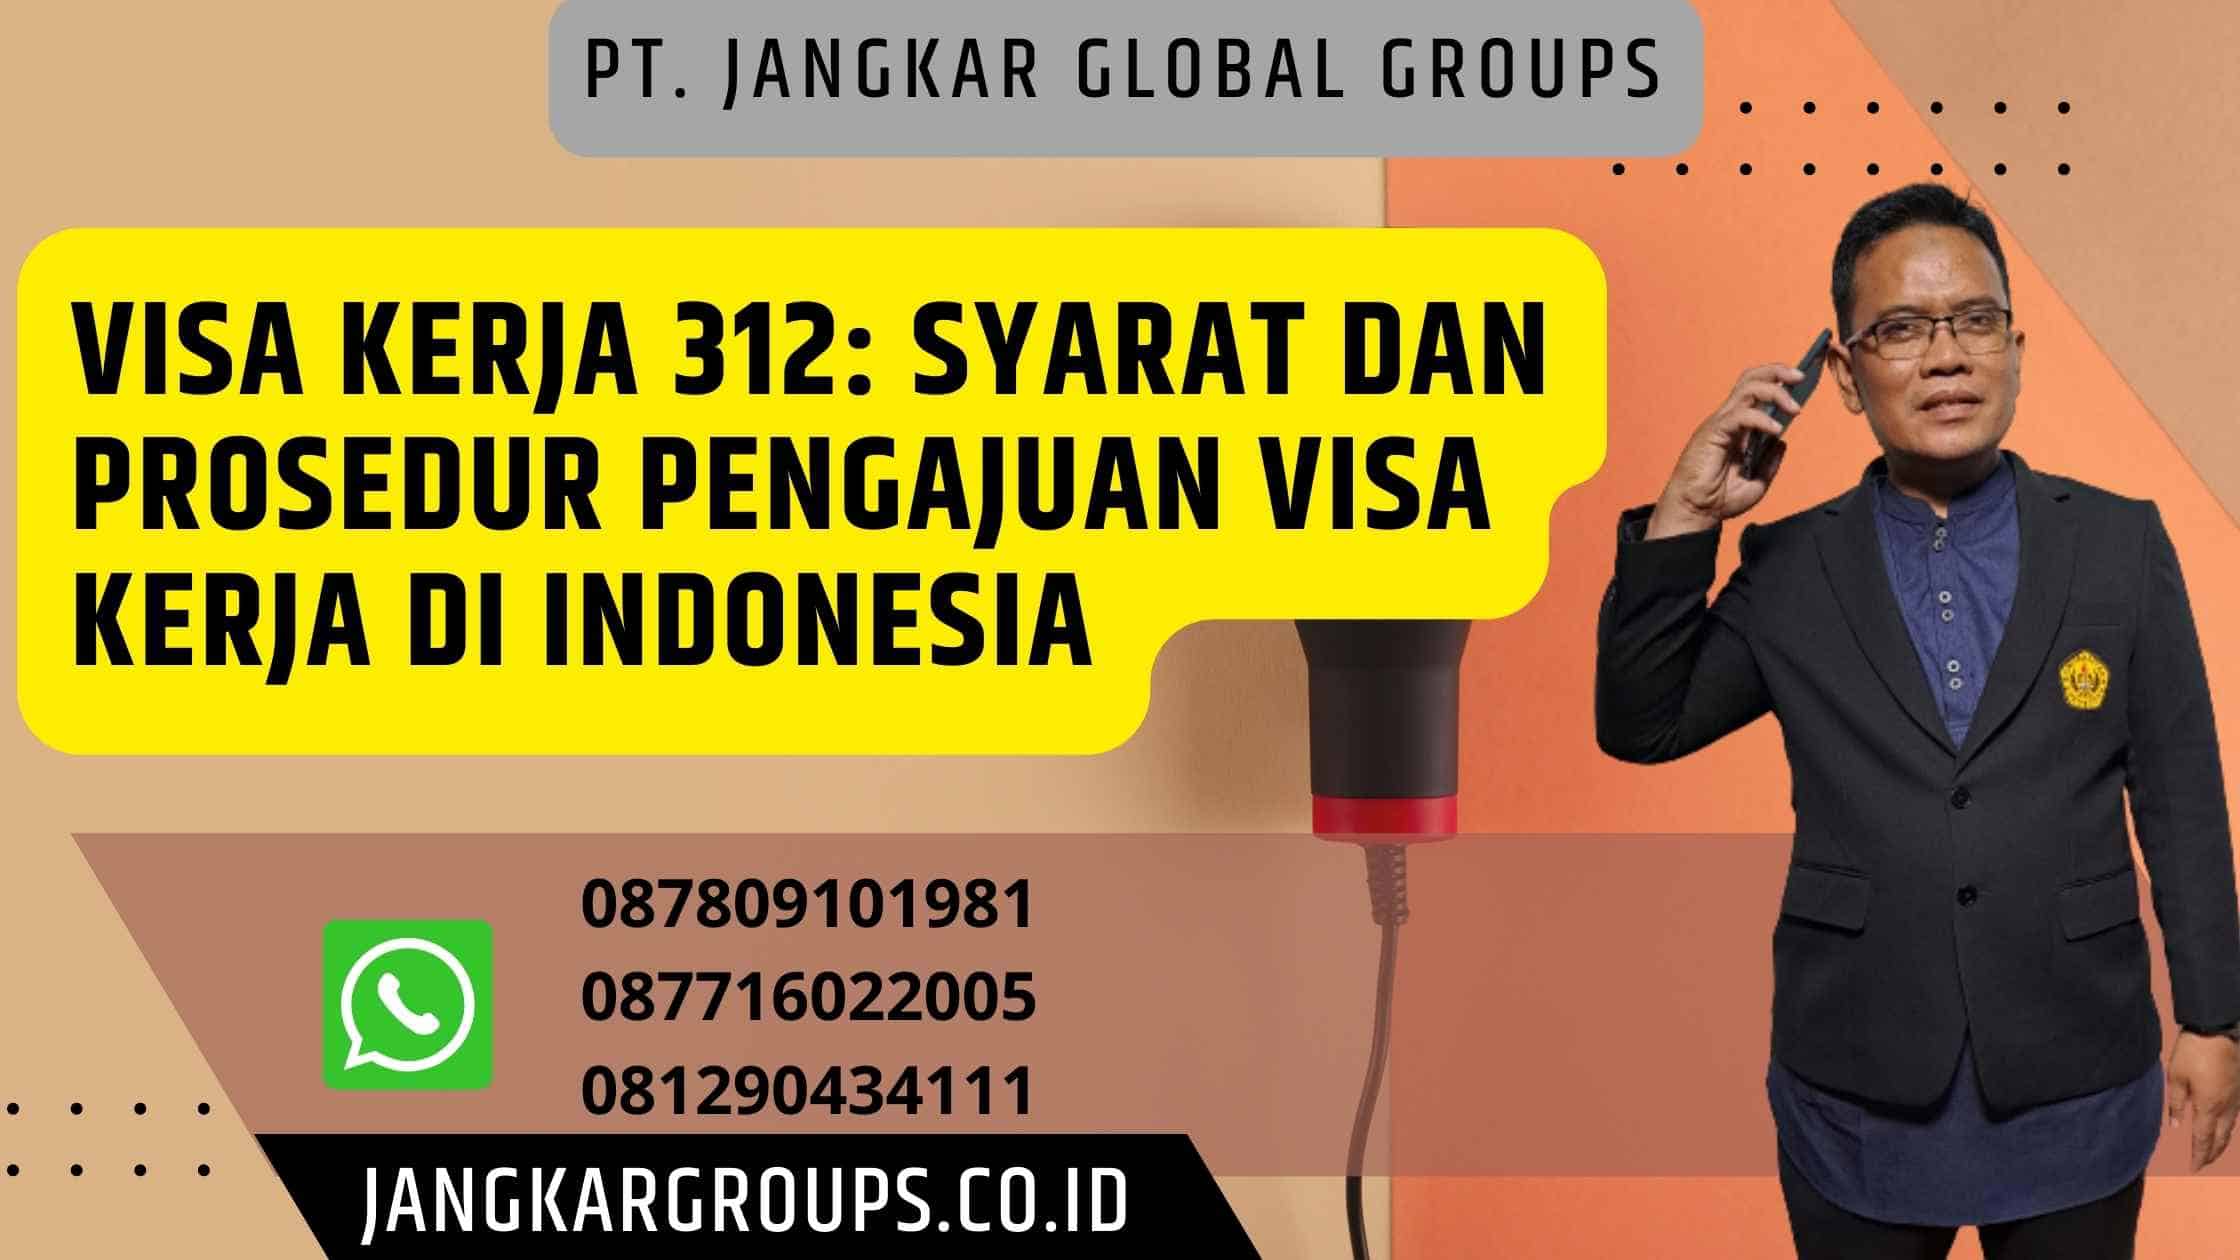 Visa Kerja 312: Syarat dan Prosedur Pengajuan Visa Kerja di Indonesia